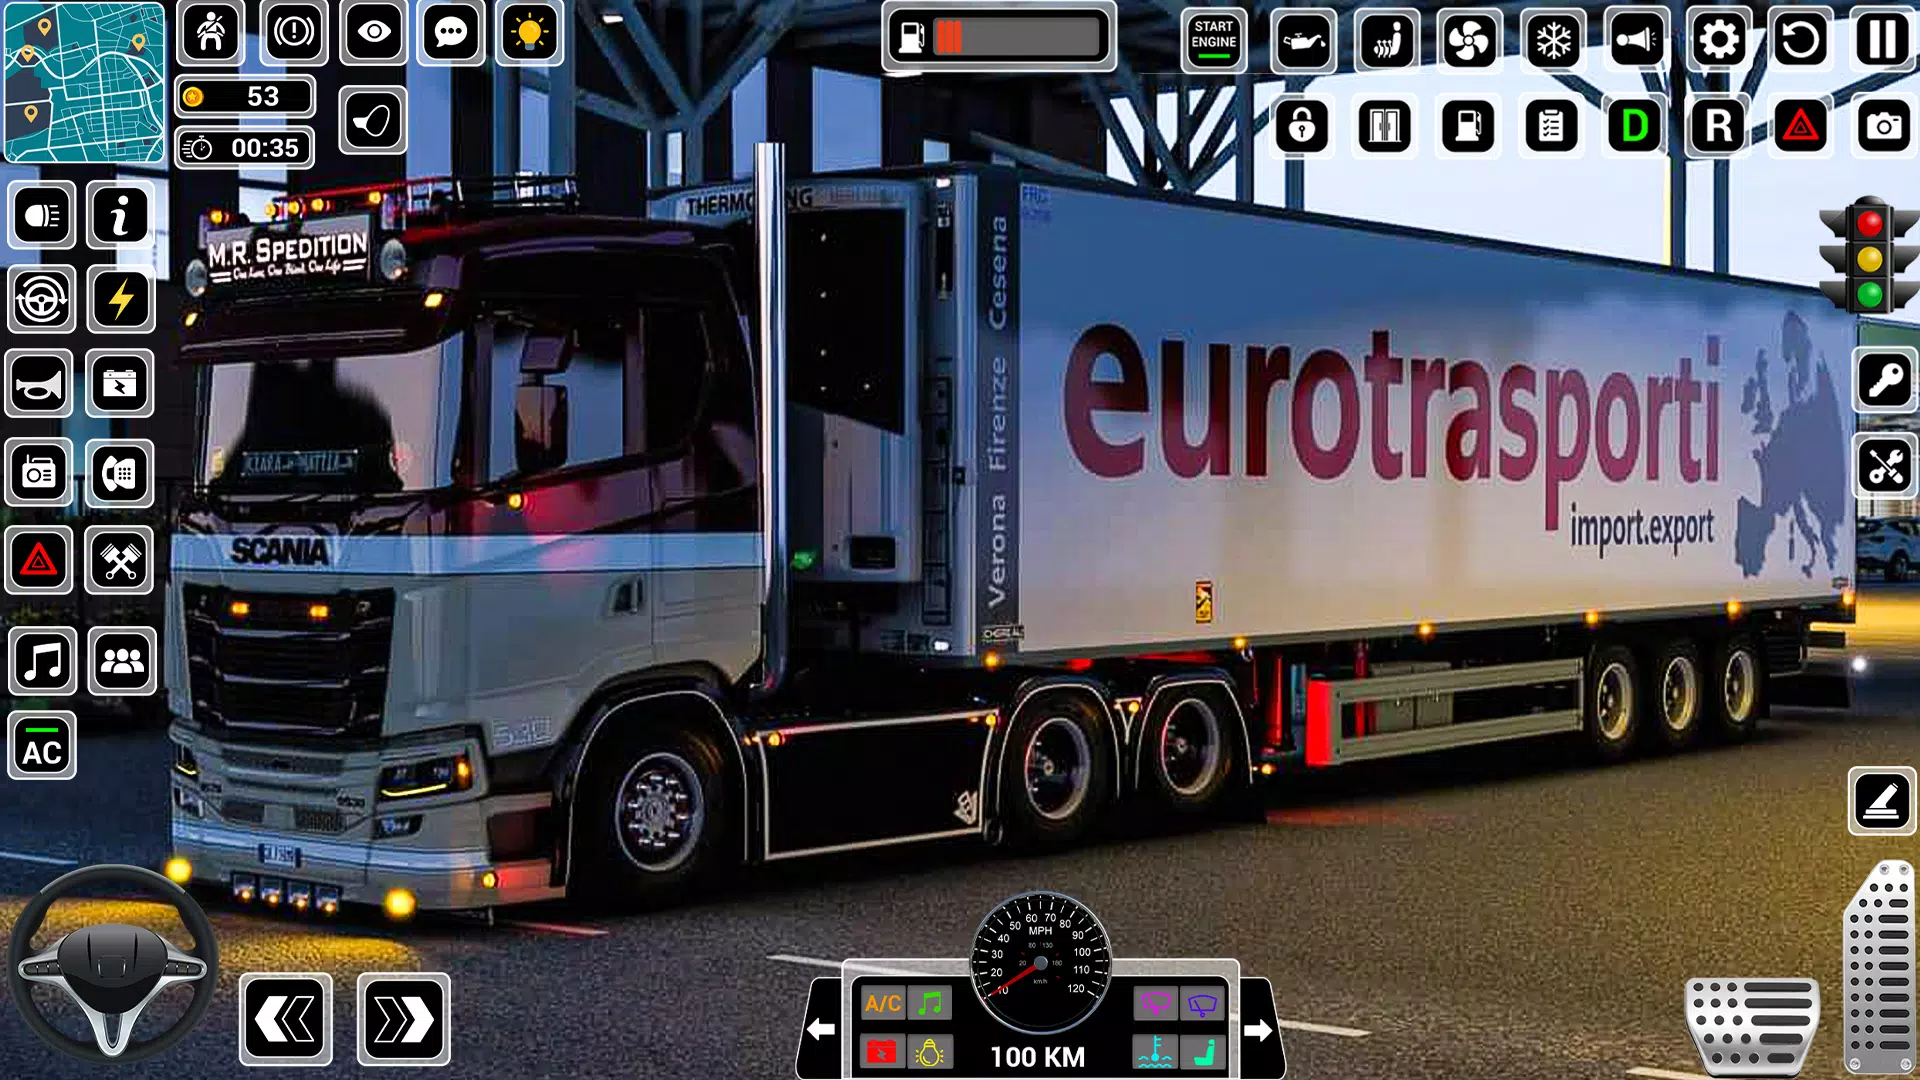 Download do APK de jogos de estacionamento caminhão 2020: reboque